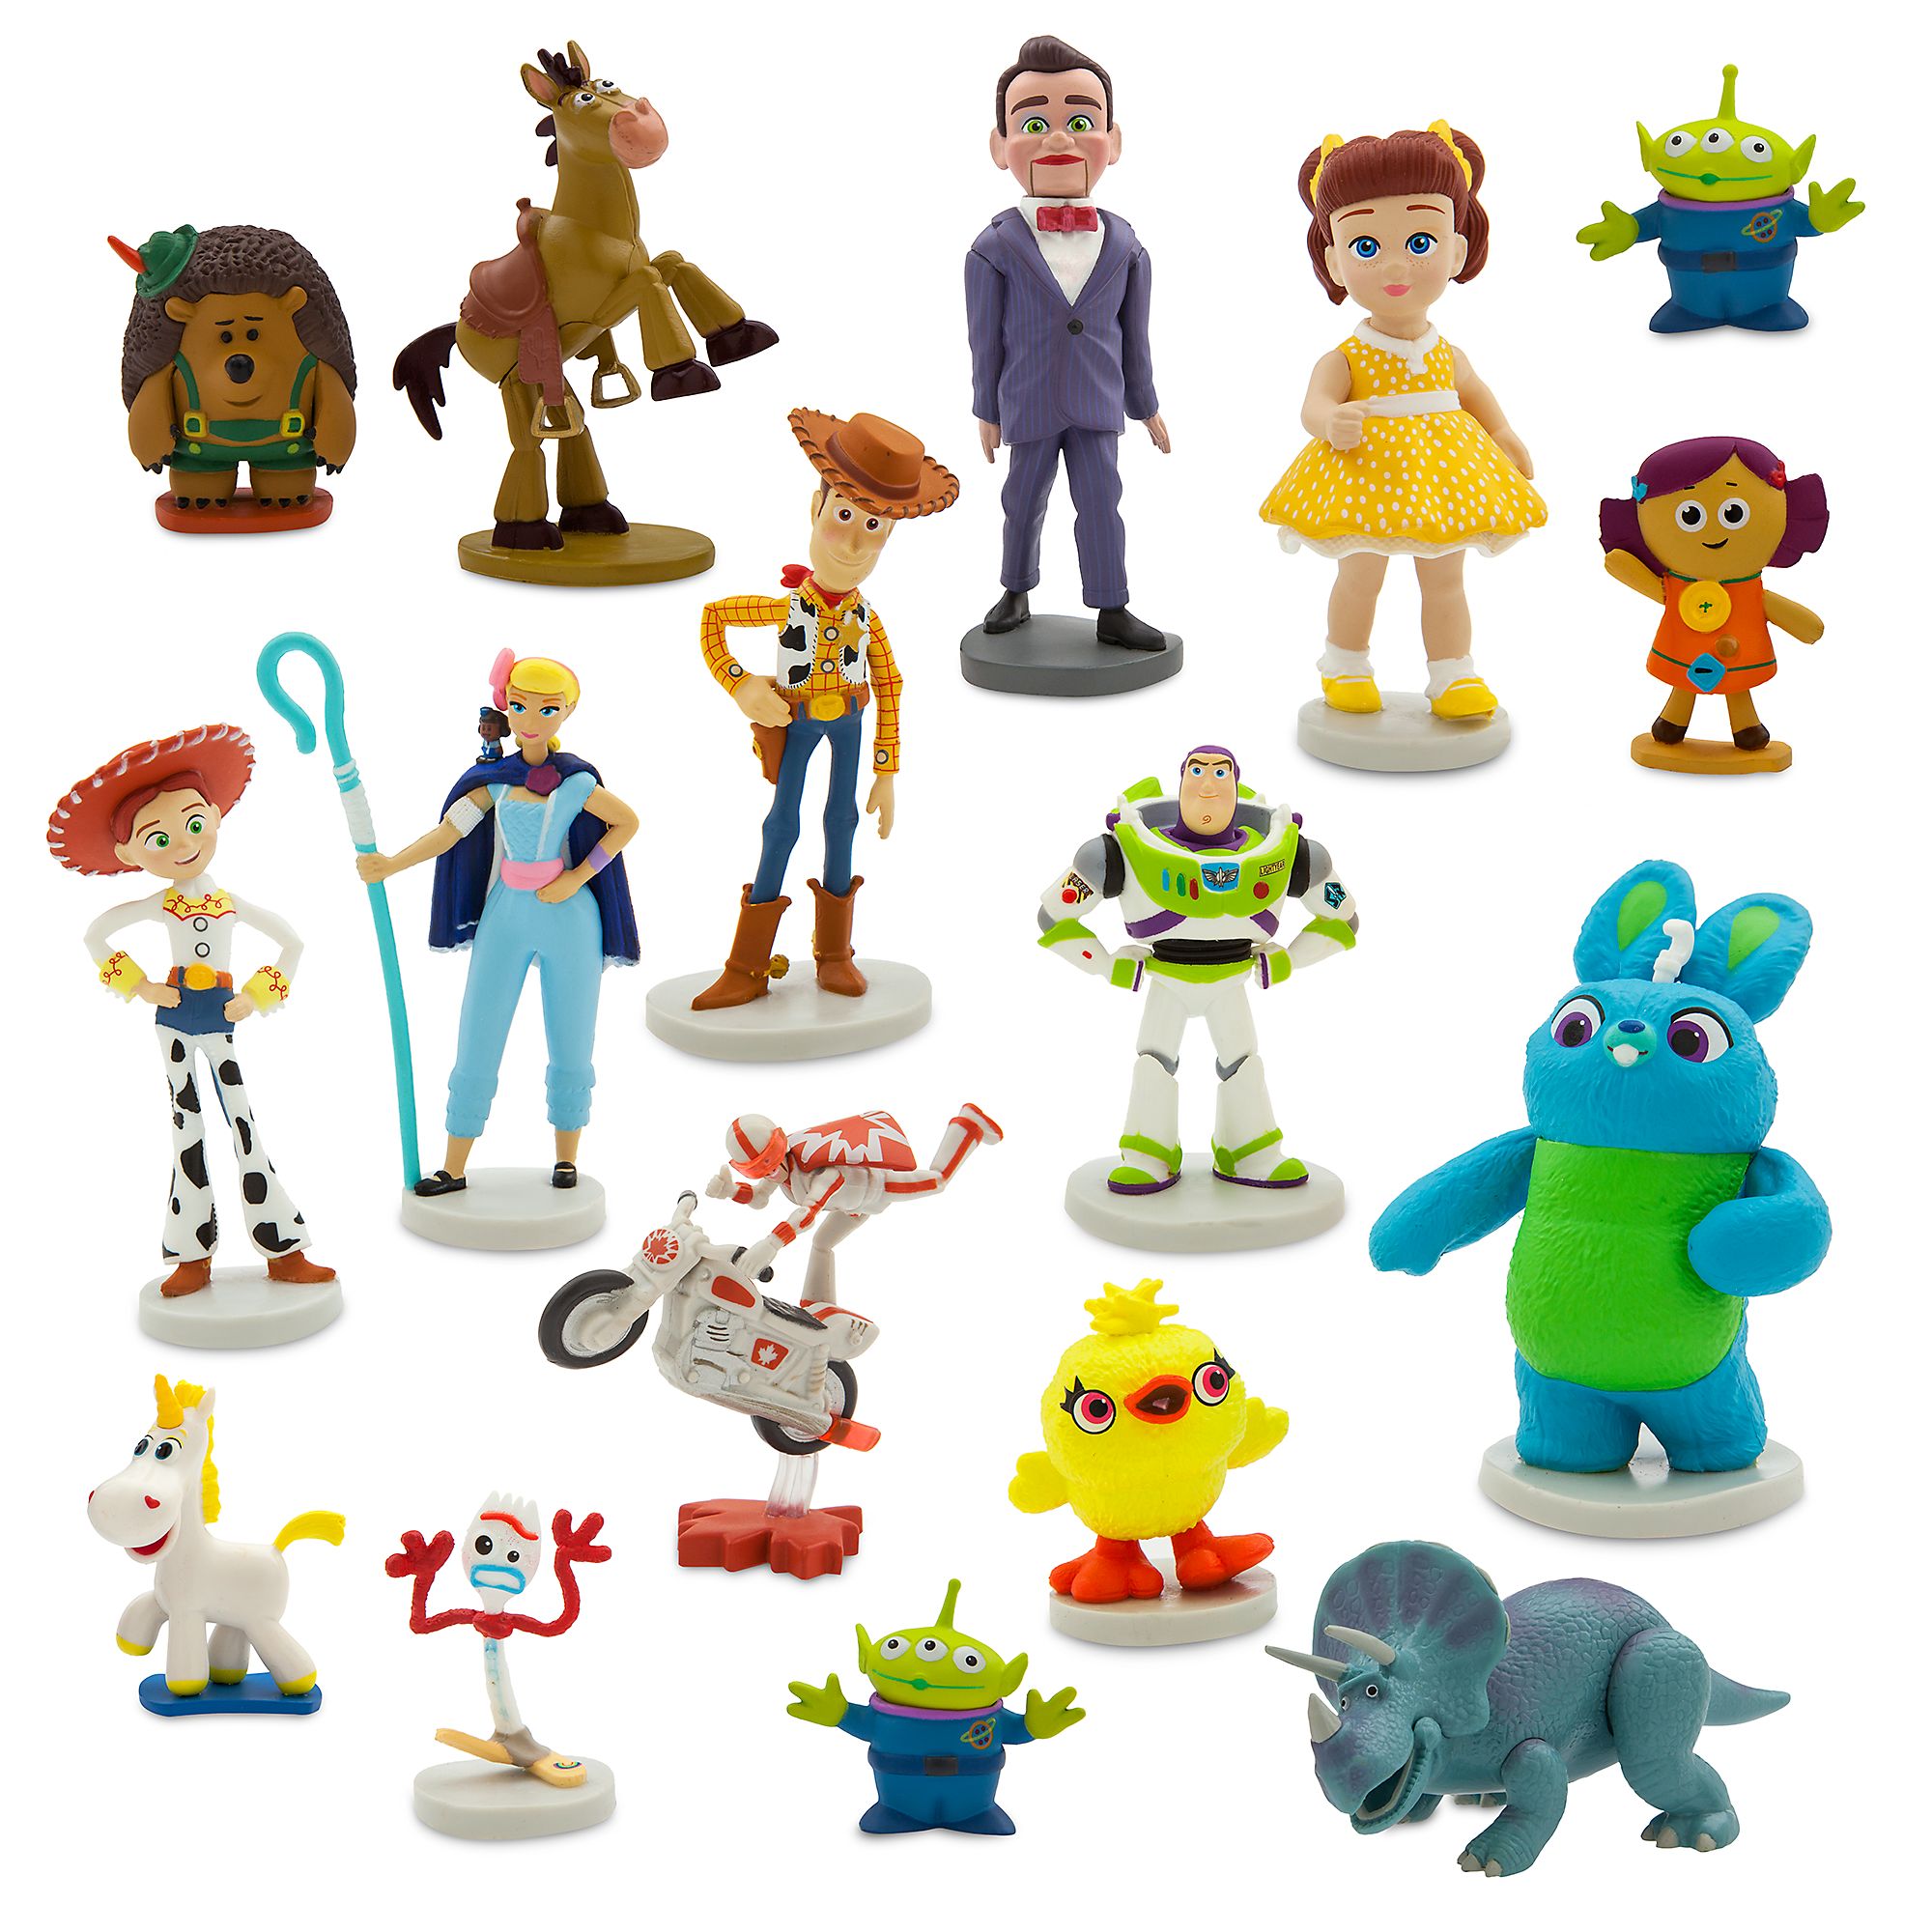 Другие игрушки найди другие игрушки. Набор фигурок Disney/Pixar Toy story. Дисней Пиксар история игрушек 4. Toy story 4 мини-фигурки "история игрушек-4" (новые персонажи) ghl54. Фигурки Дисней "история игрушек" 10 шт.